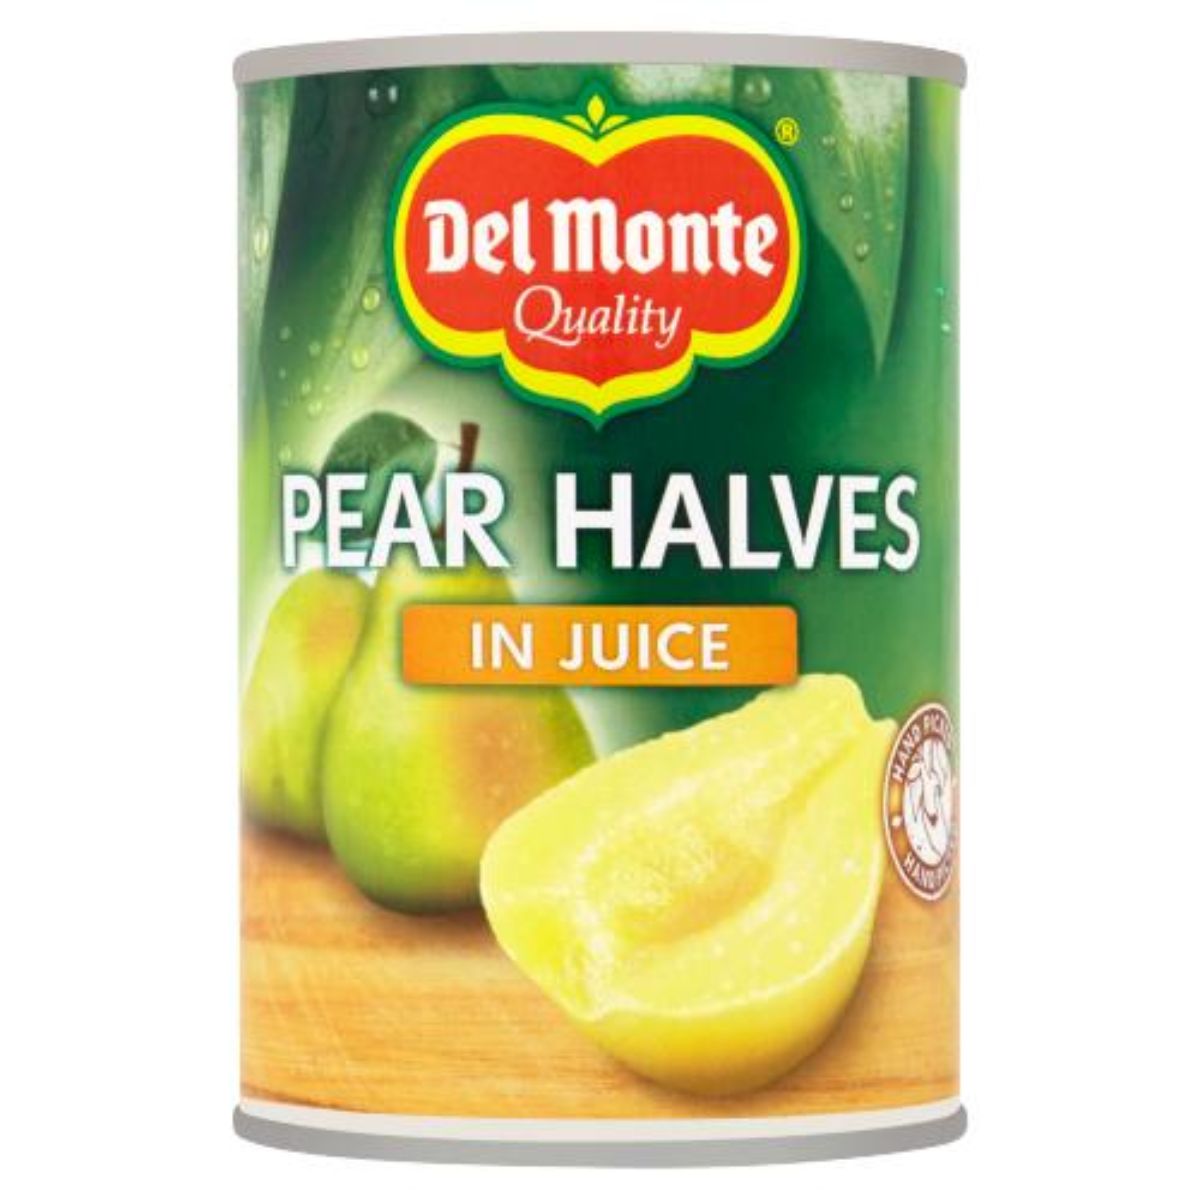 Del Monte - Pear Halves in Juice - 415g